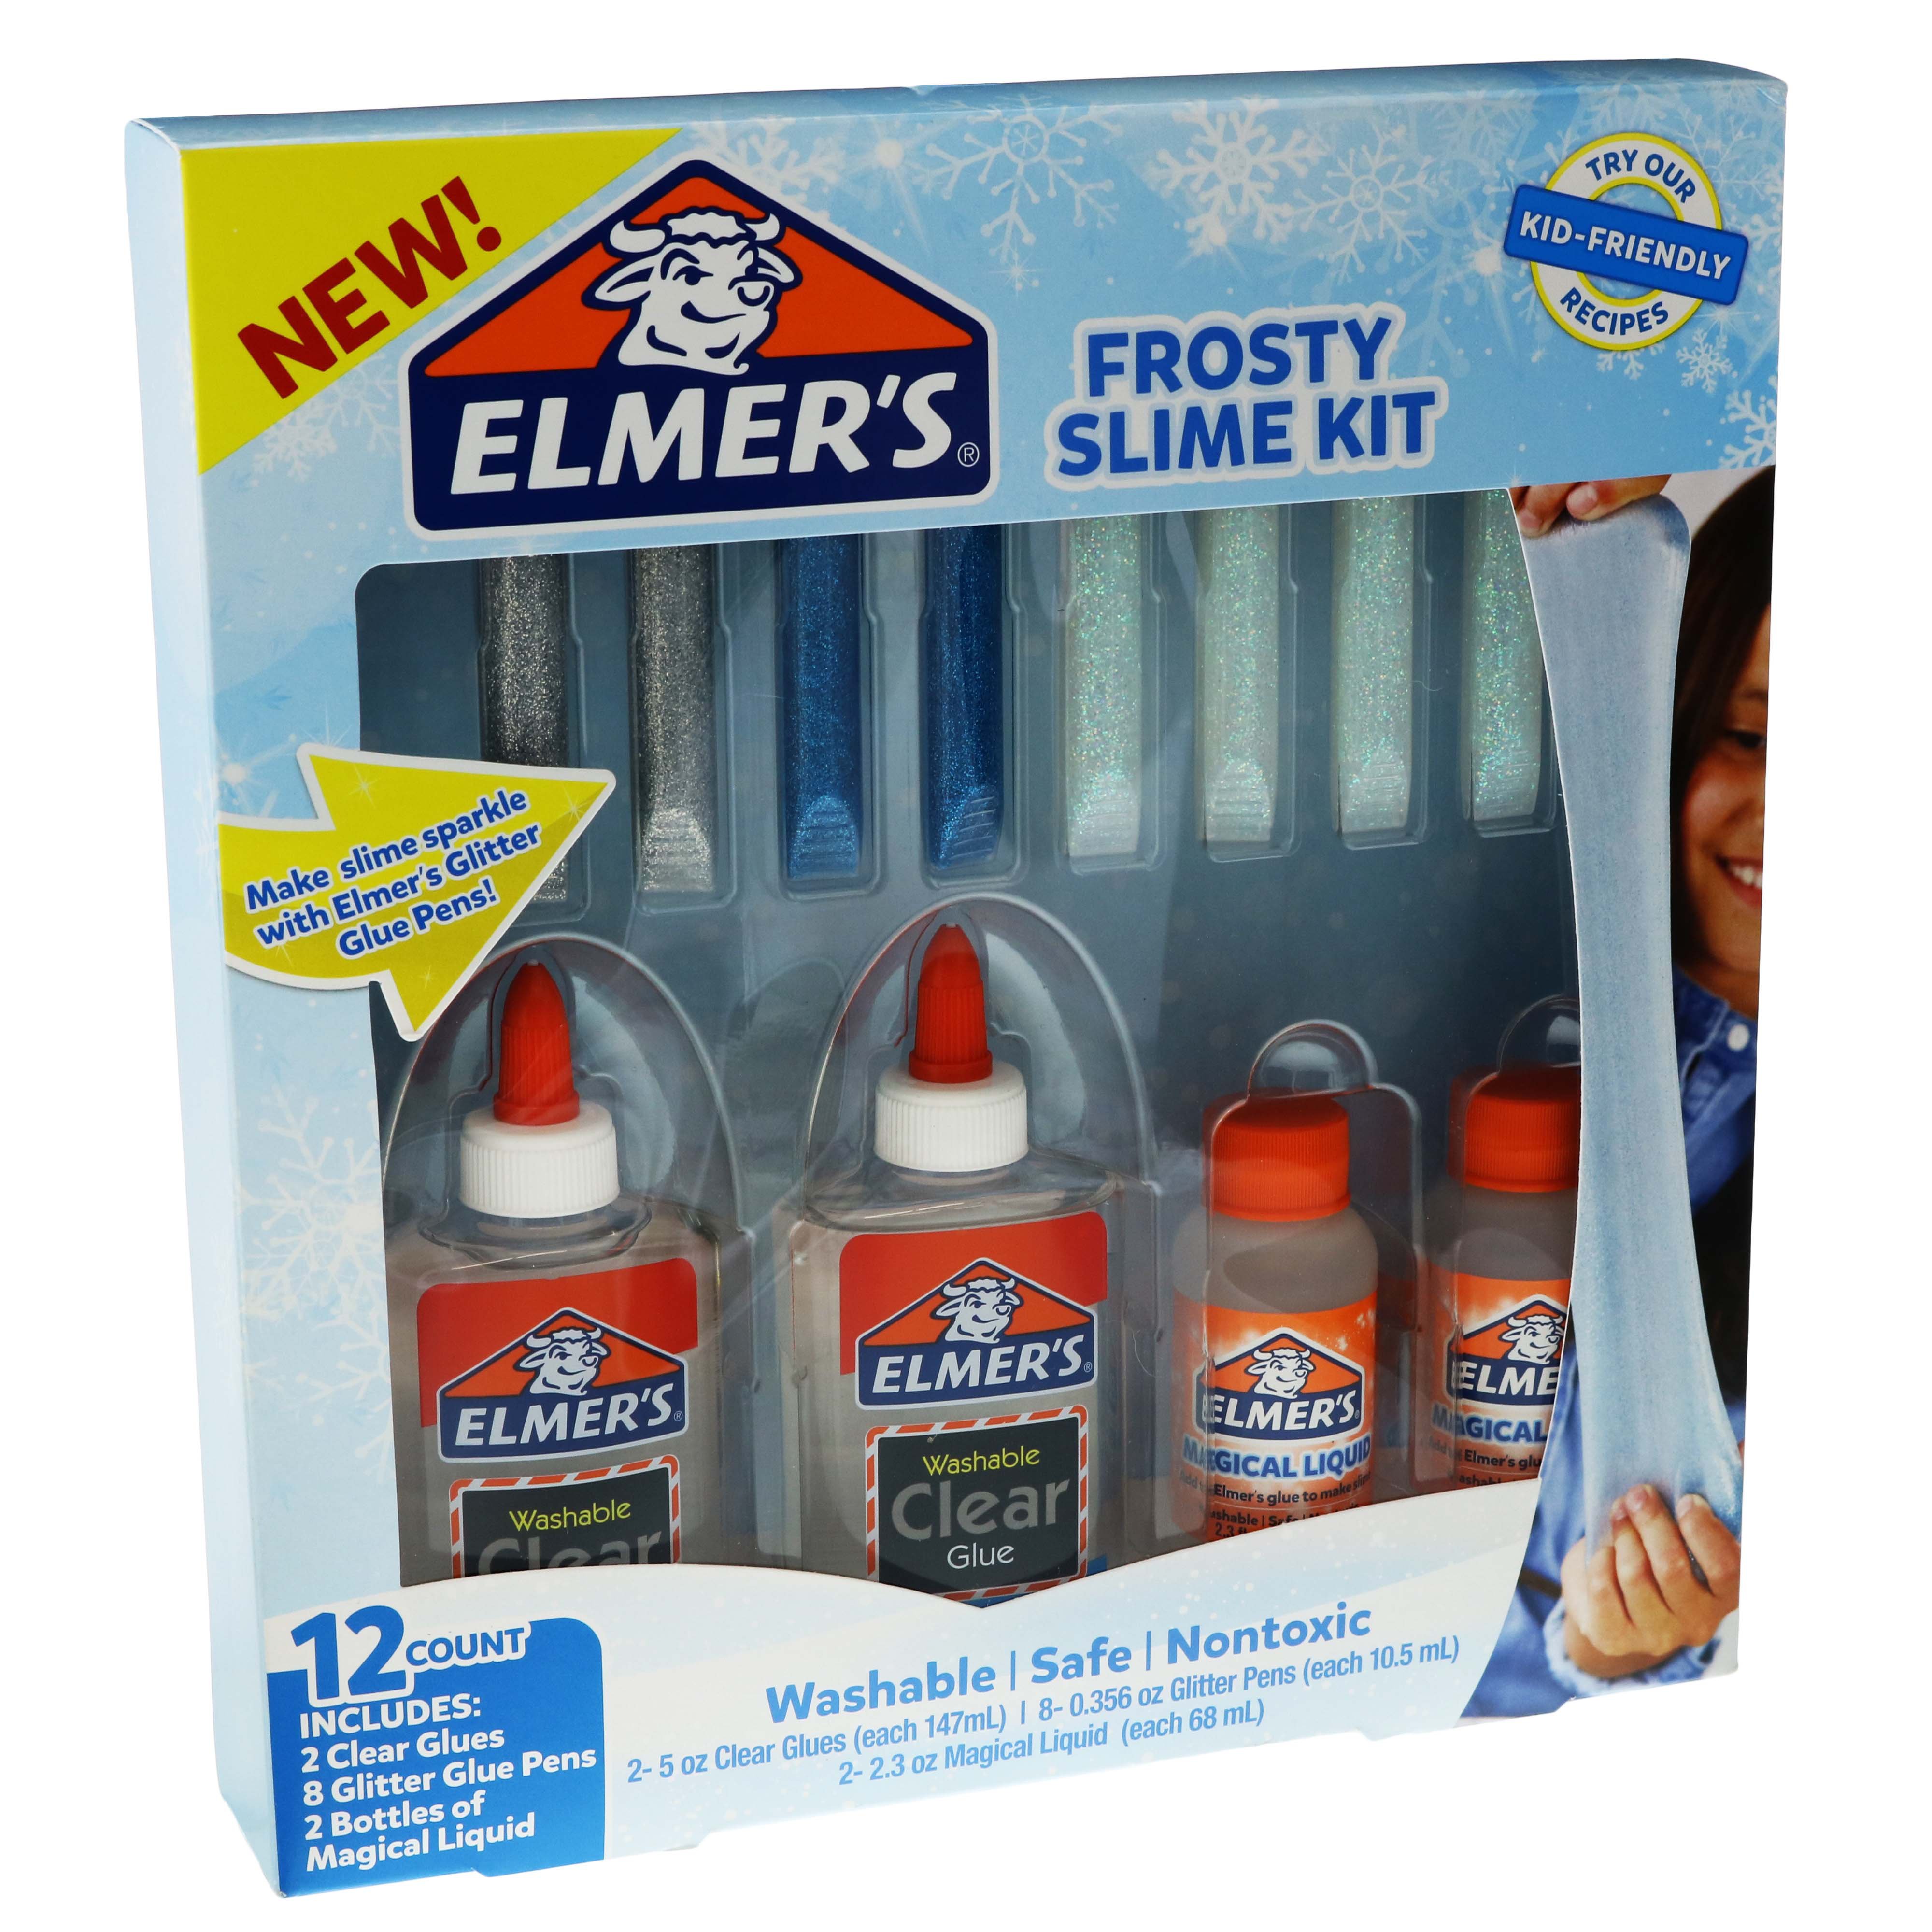 Elmer's Magical Liquid, Elmer`s